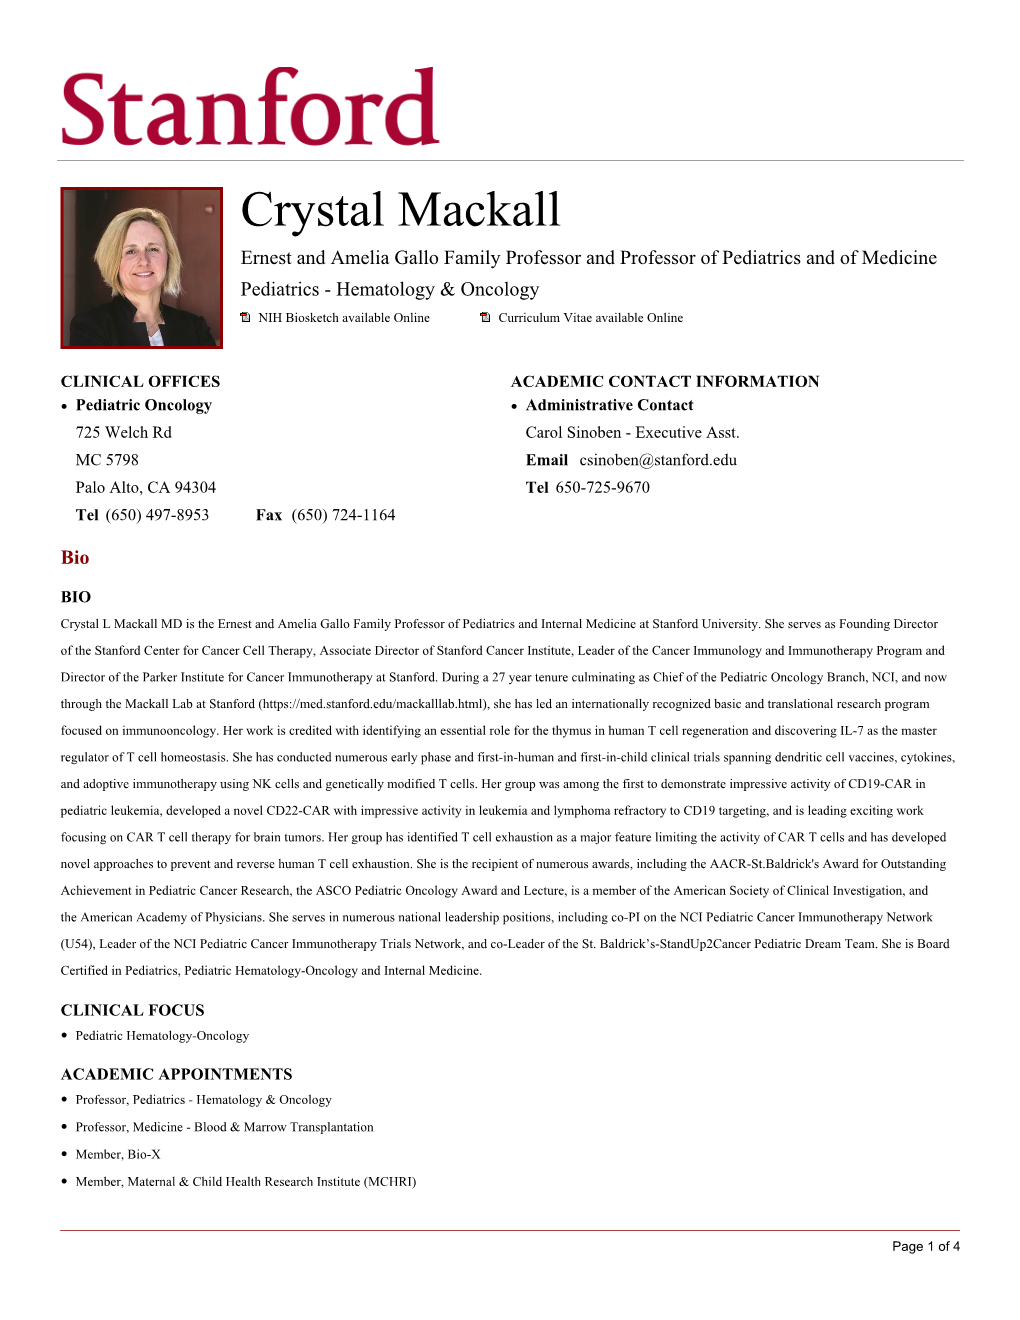 Crystal Mackall